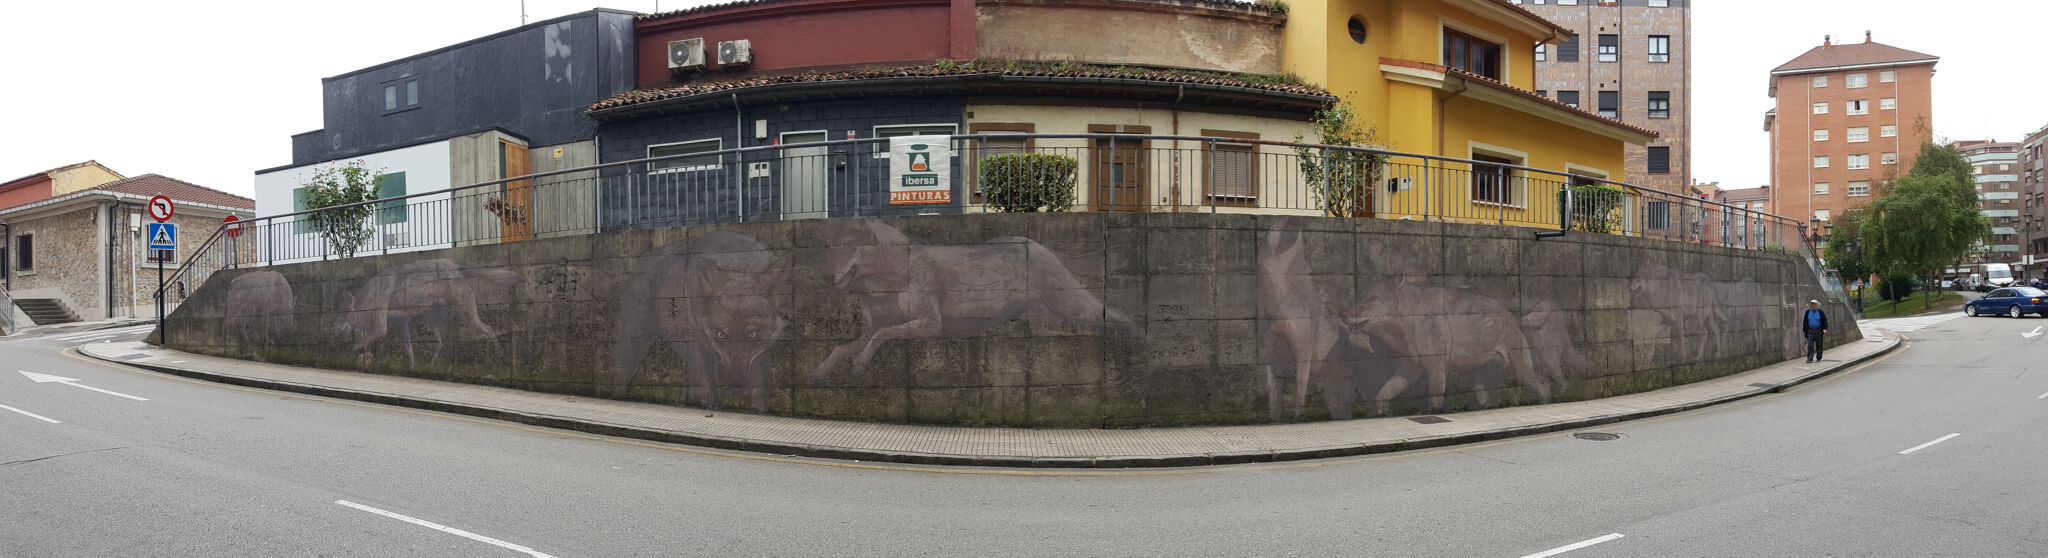 Taquen&mdash;10 lobos Ibéricos más en Asturias